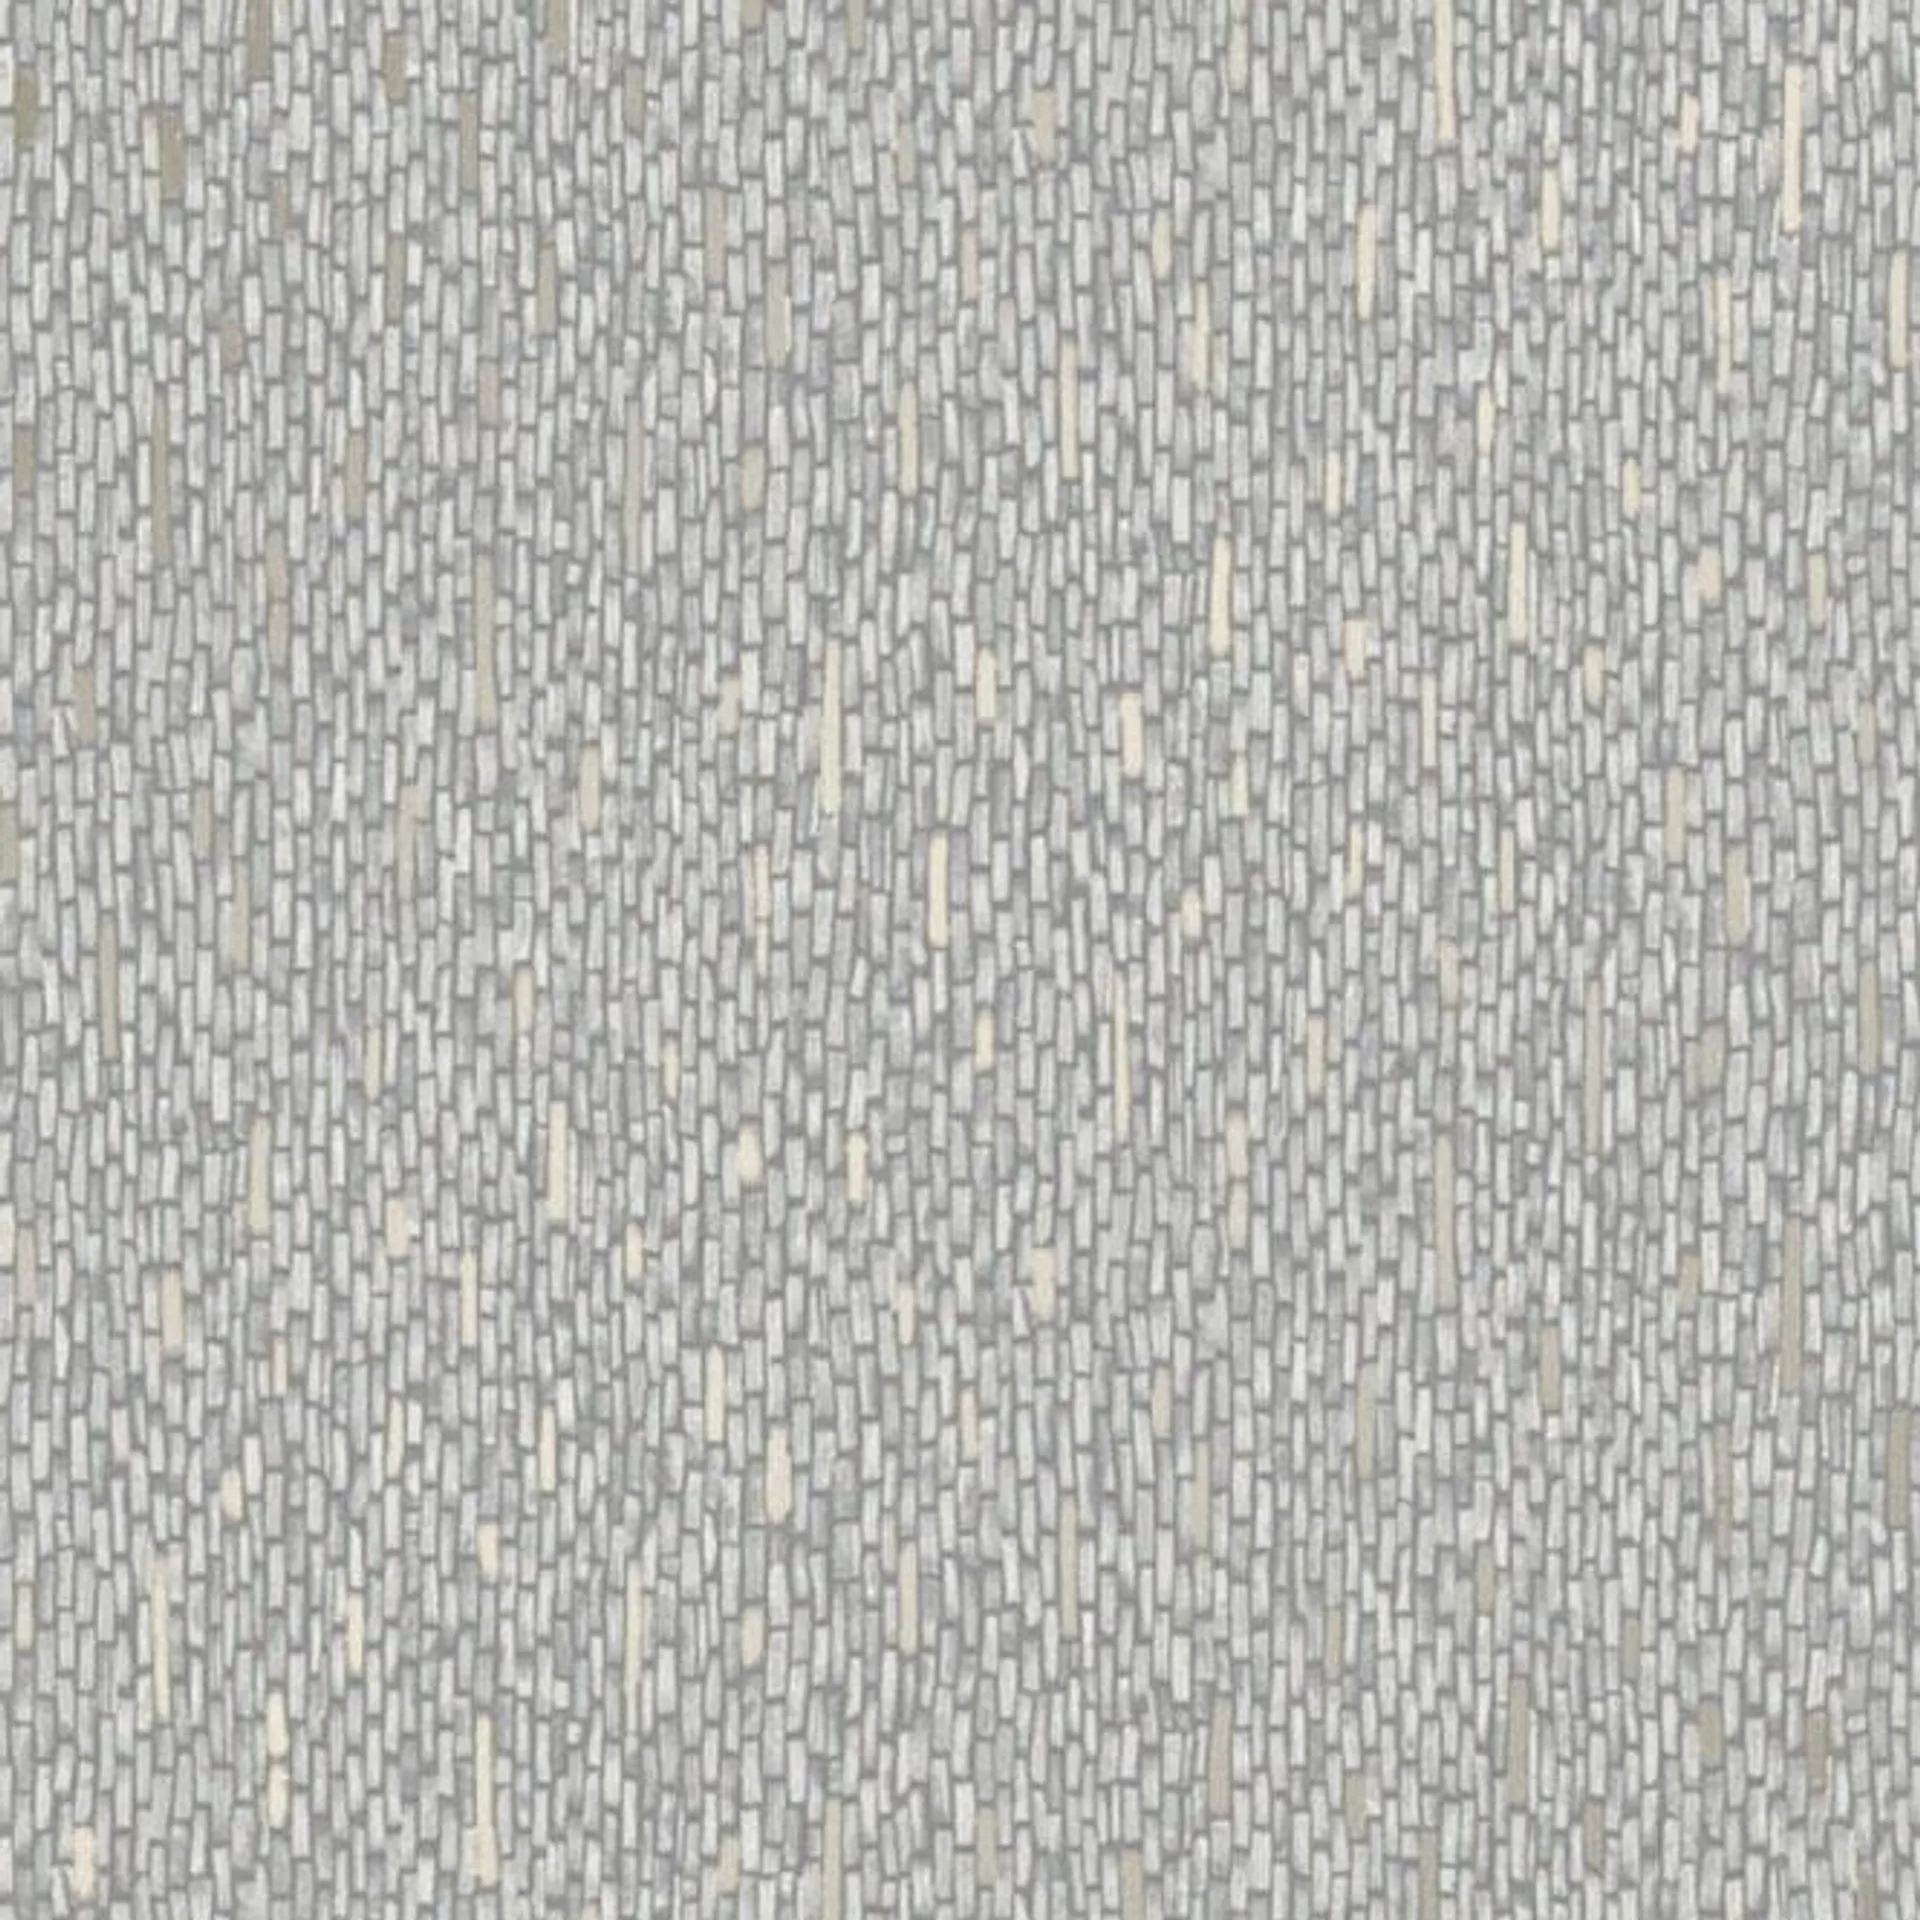 Hessian wallpaper in grey